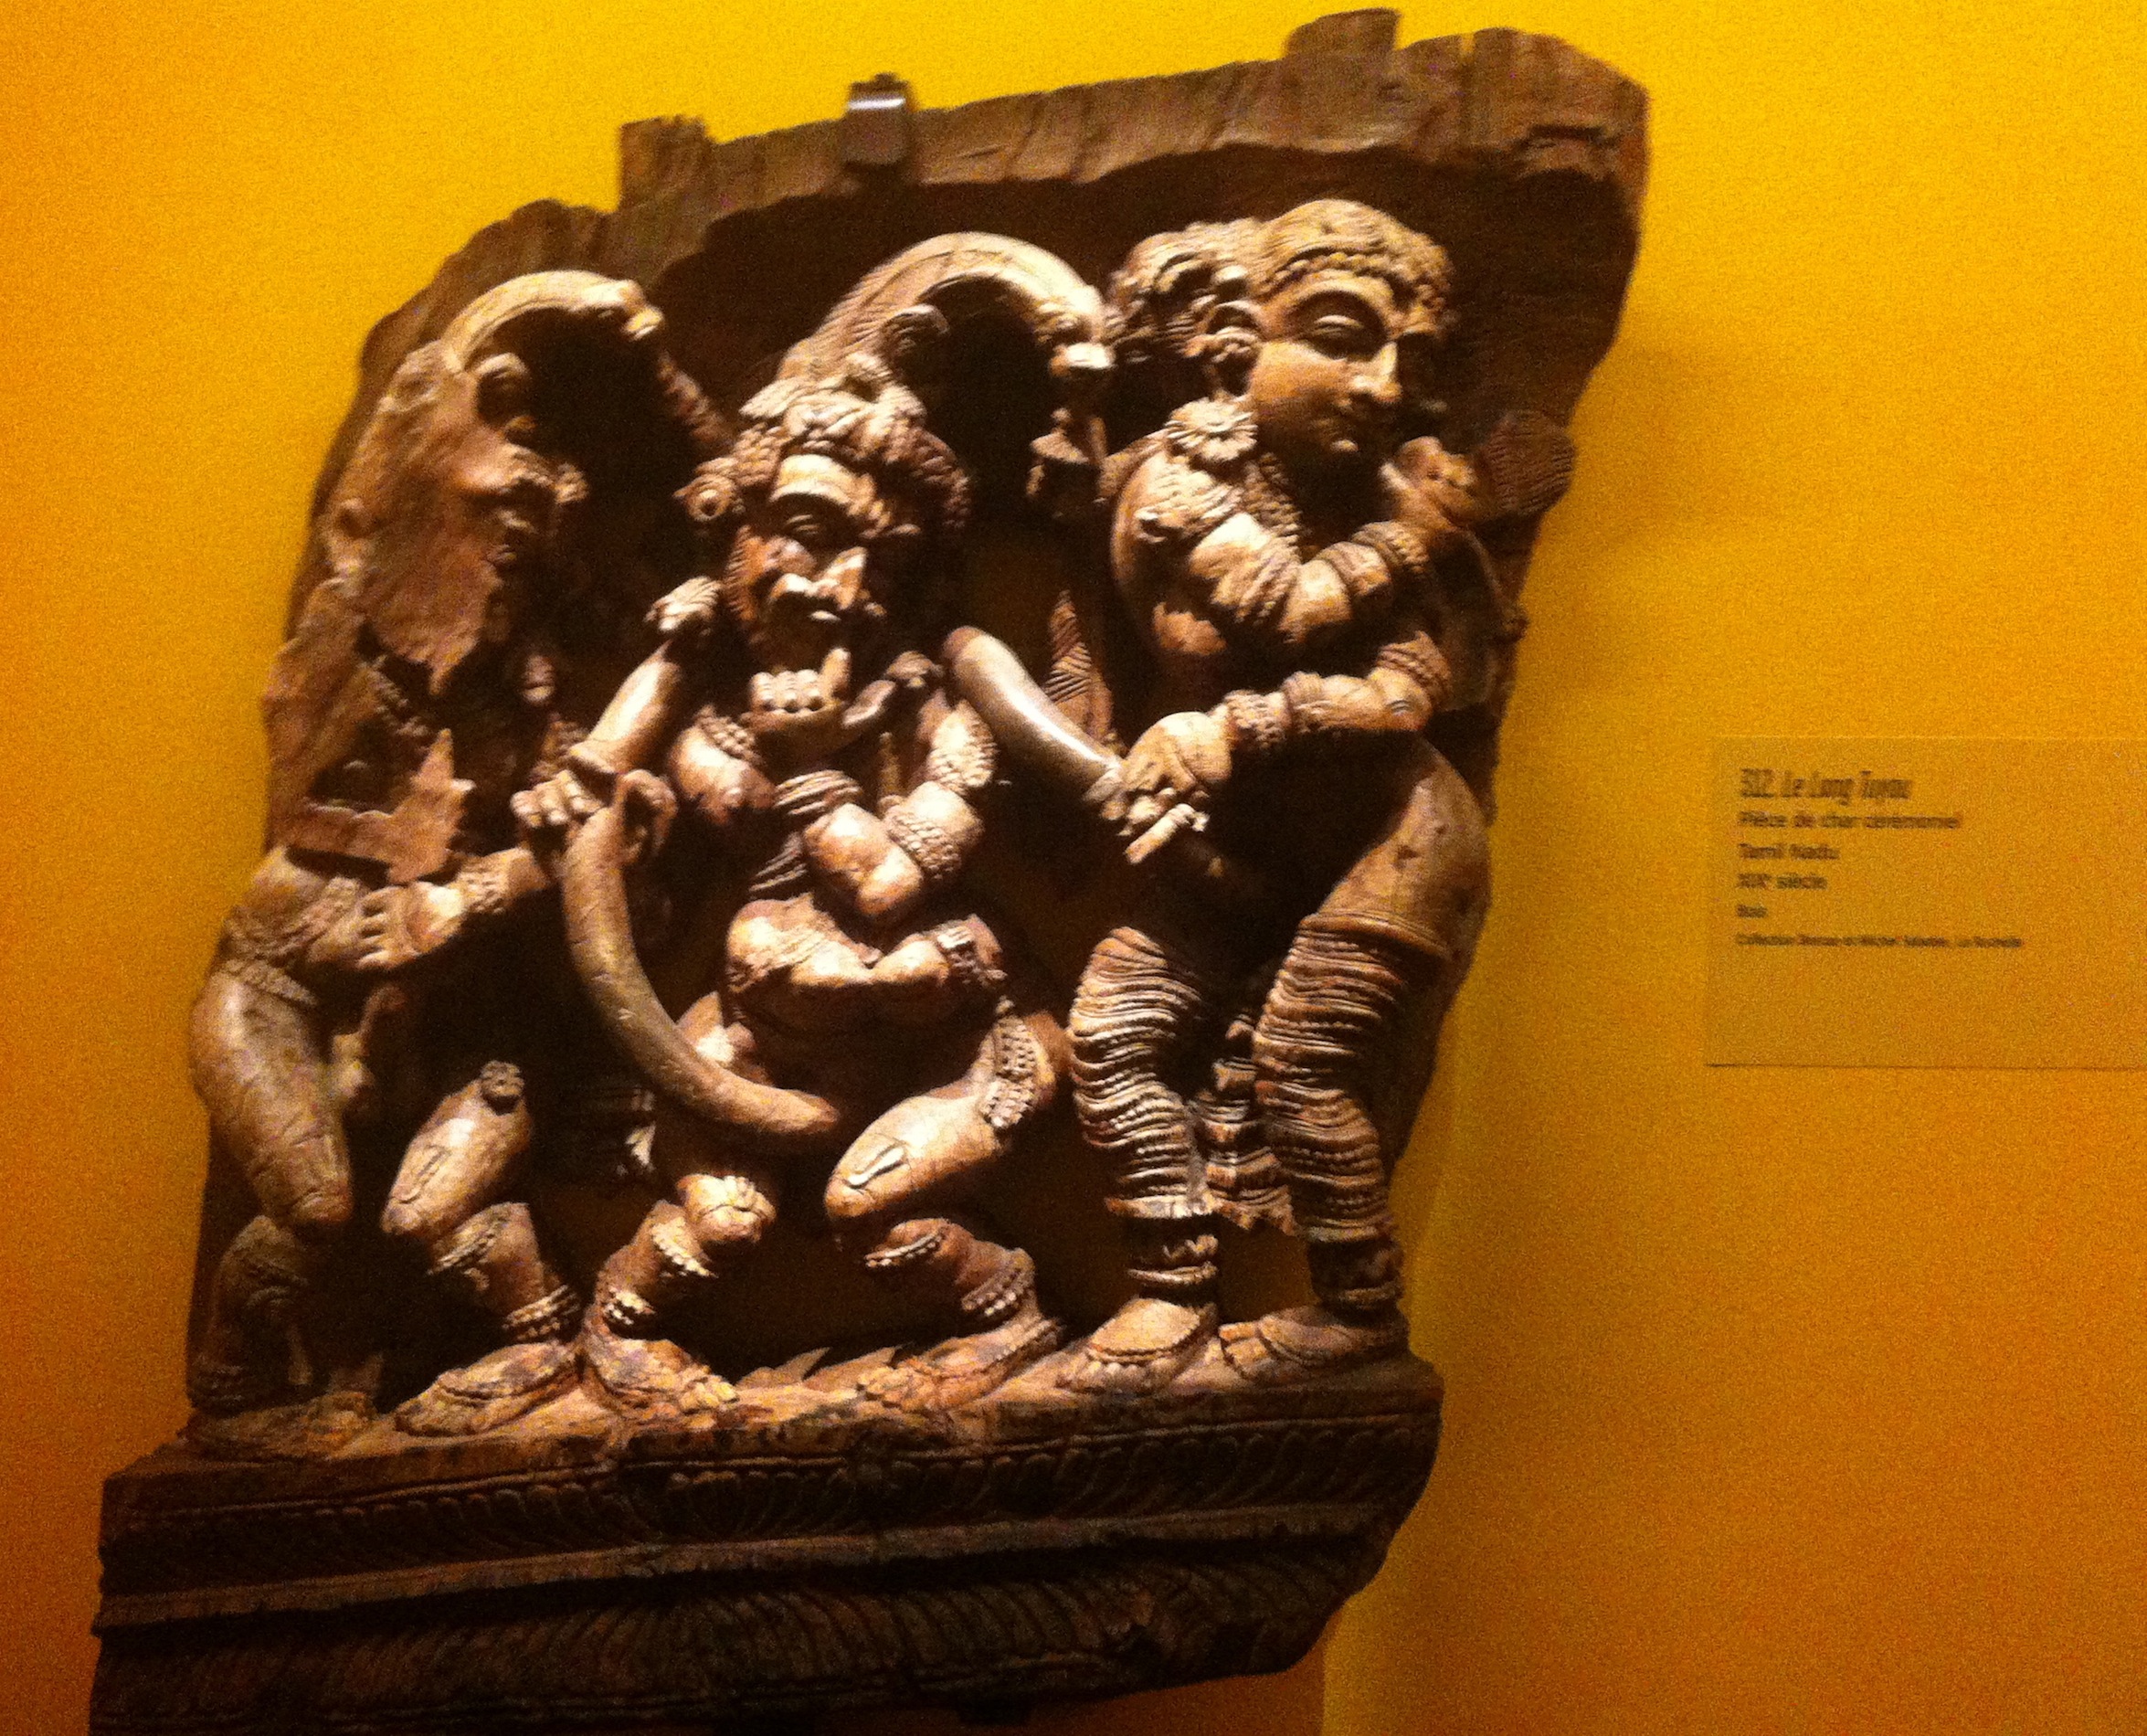 La verge infinie. La taille du sexe masculin peut être un objet tant de fierté que de peur, comme en témoigne le cliché suivant. 

> Pièce de char cérémoniel, Tamil Nadu, XIXe siècle